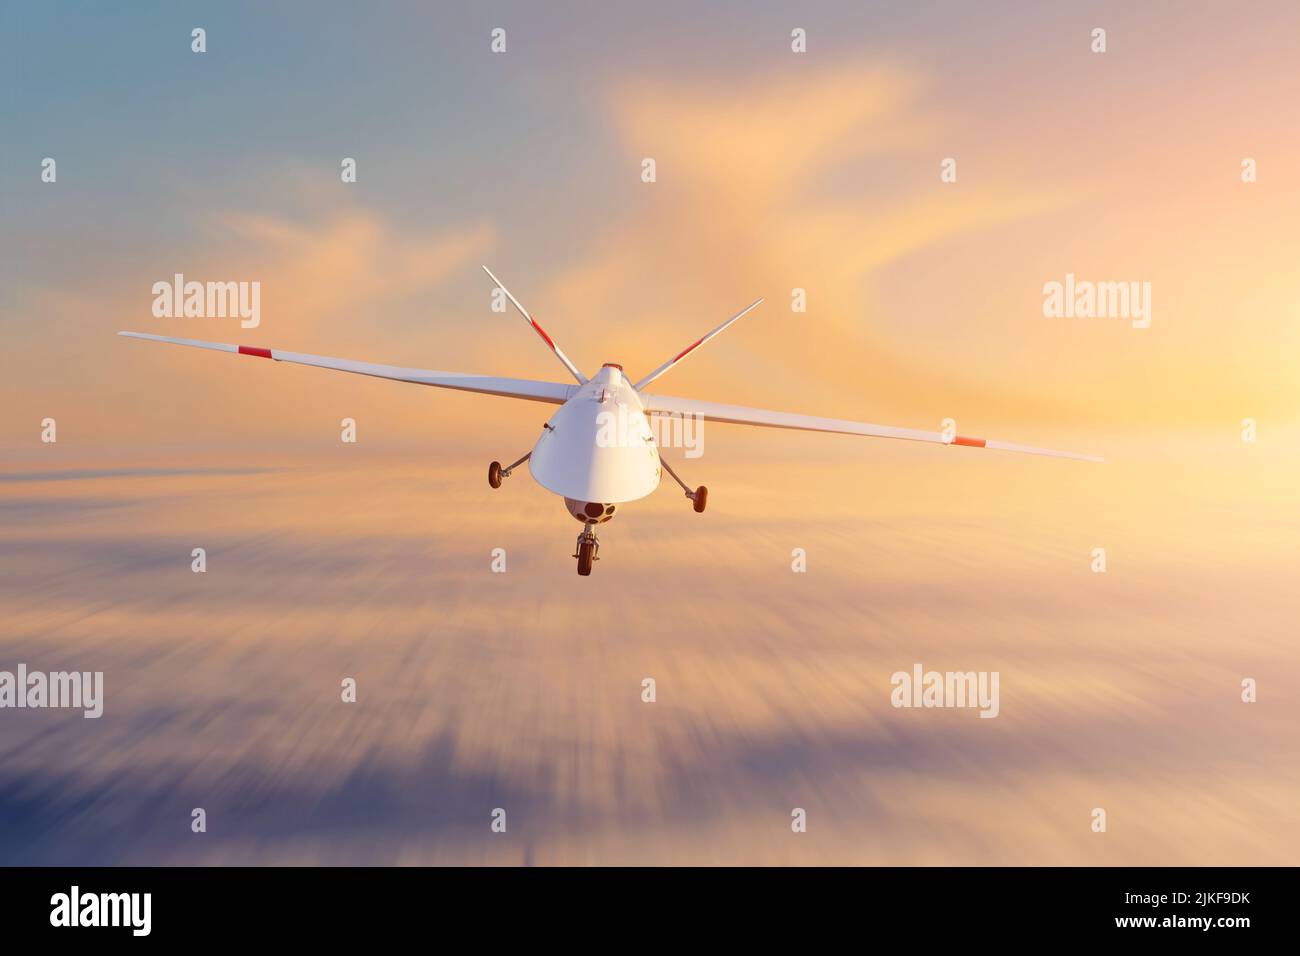 Une drone militaire sans pilote patrouille dans le ciel au coucher du soleil. La vue est tout droit Banque D'Images